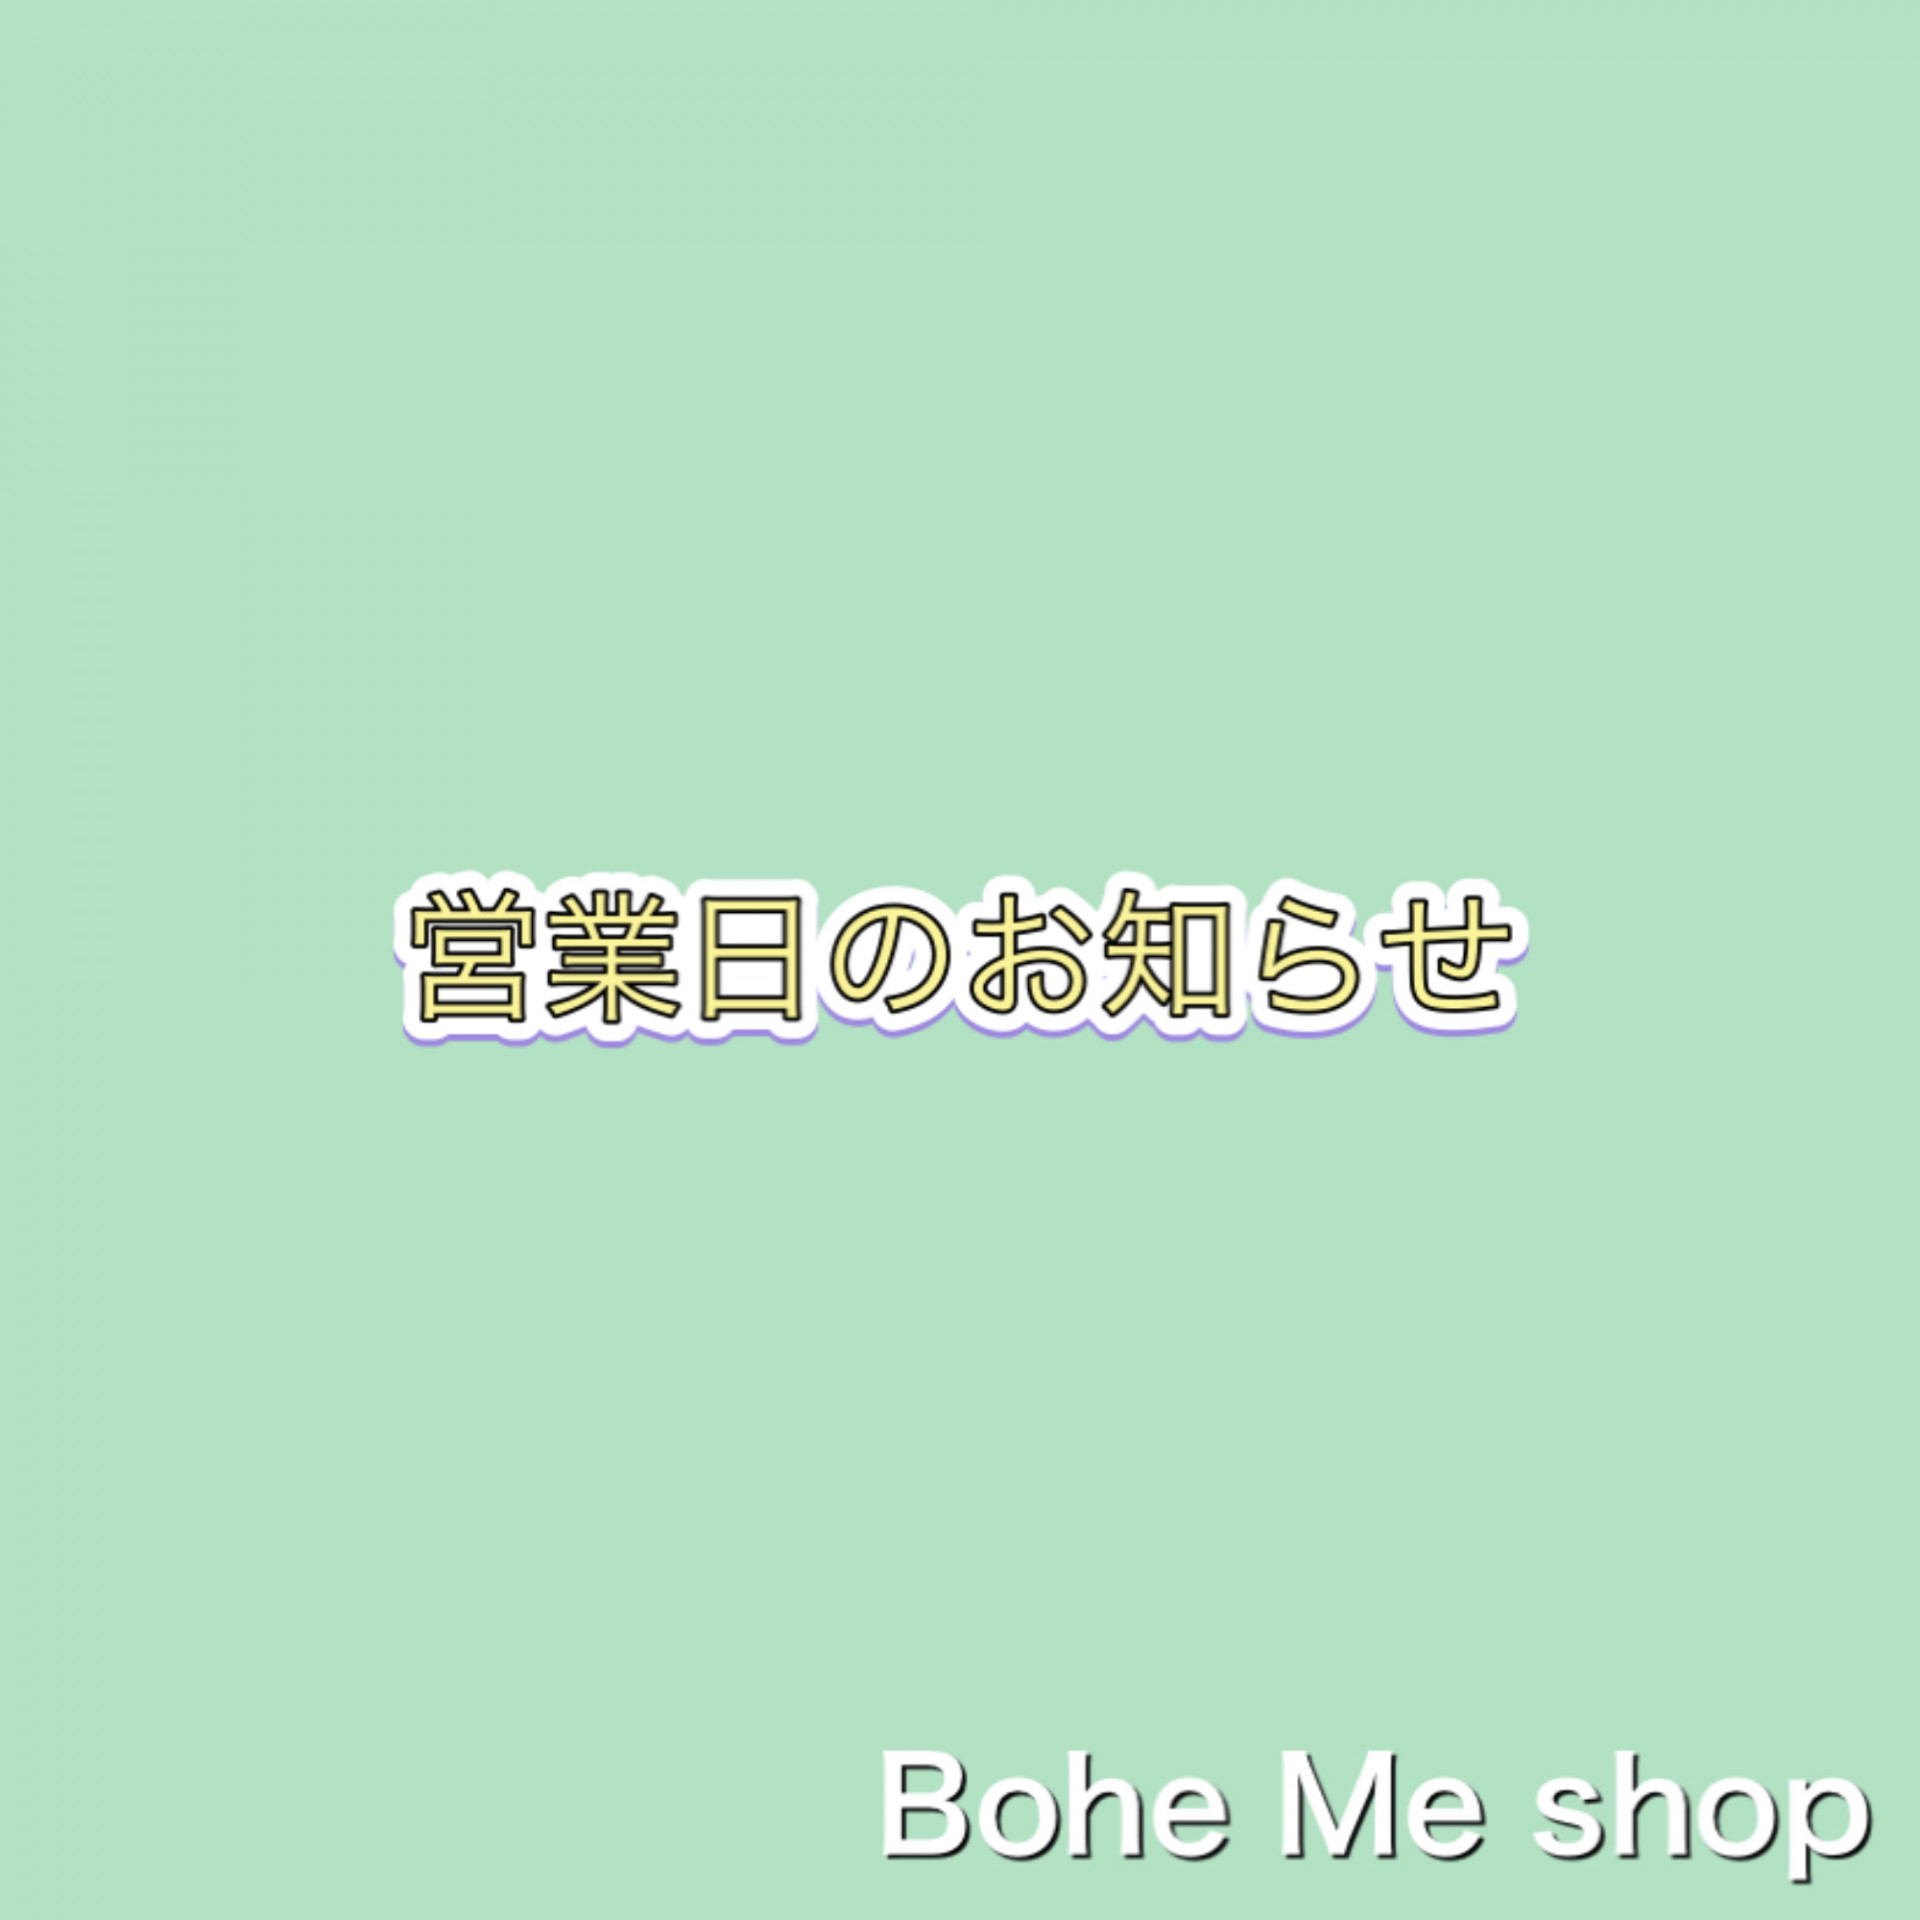 12月の営業日［Bohe Me shop】